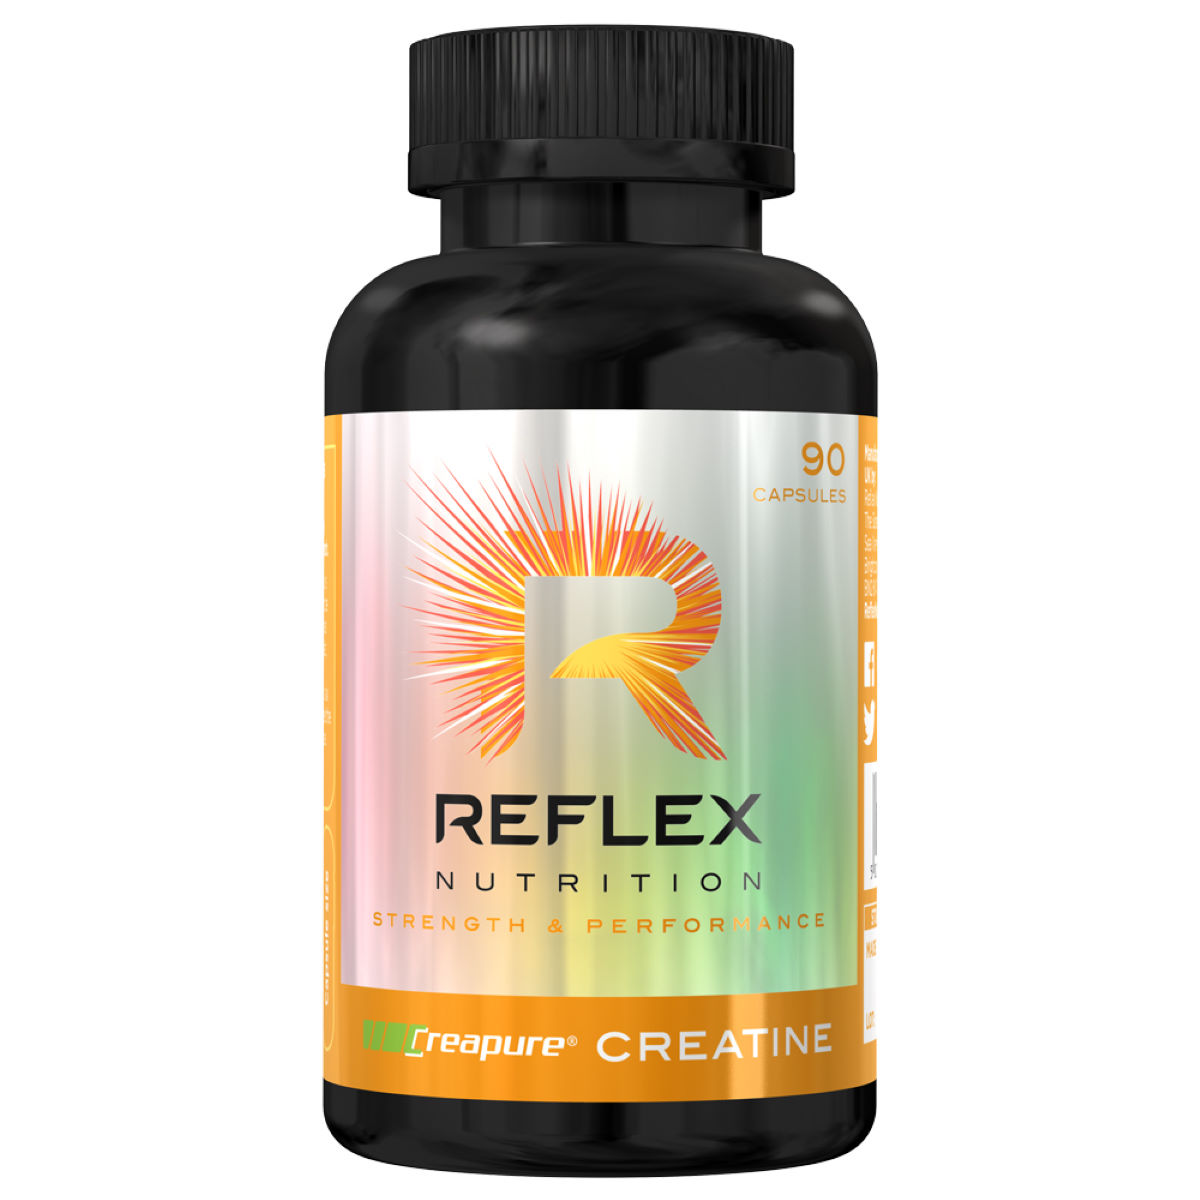 Reflex Creapure Creatine Capsules (90 Capsules) - Creatina en comprimidos